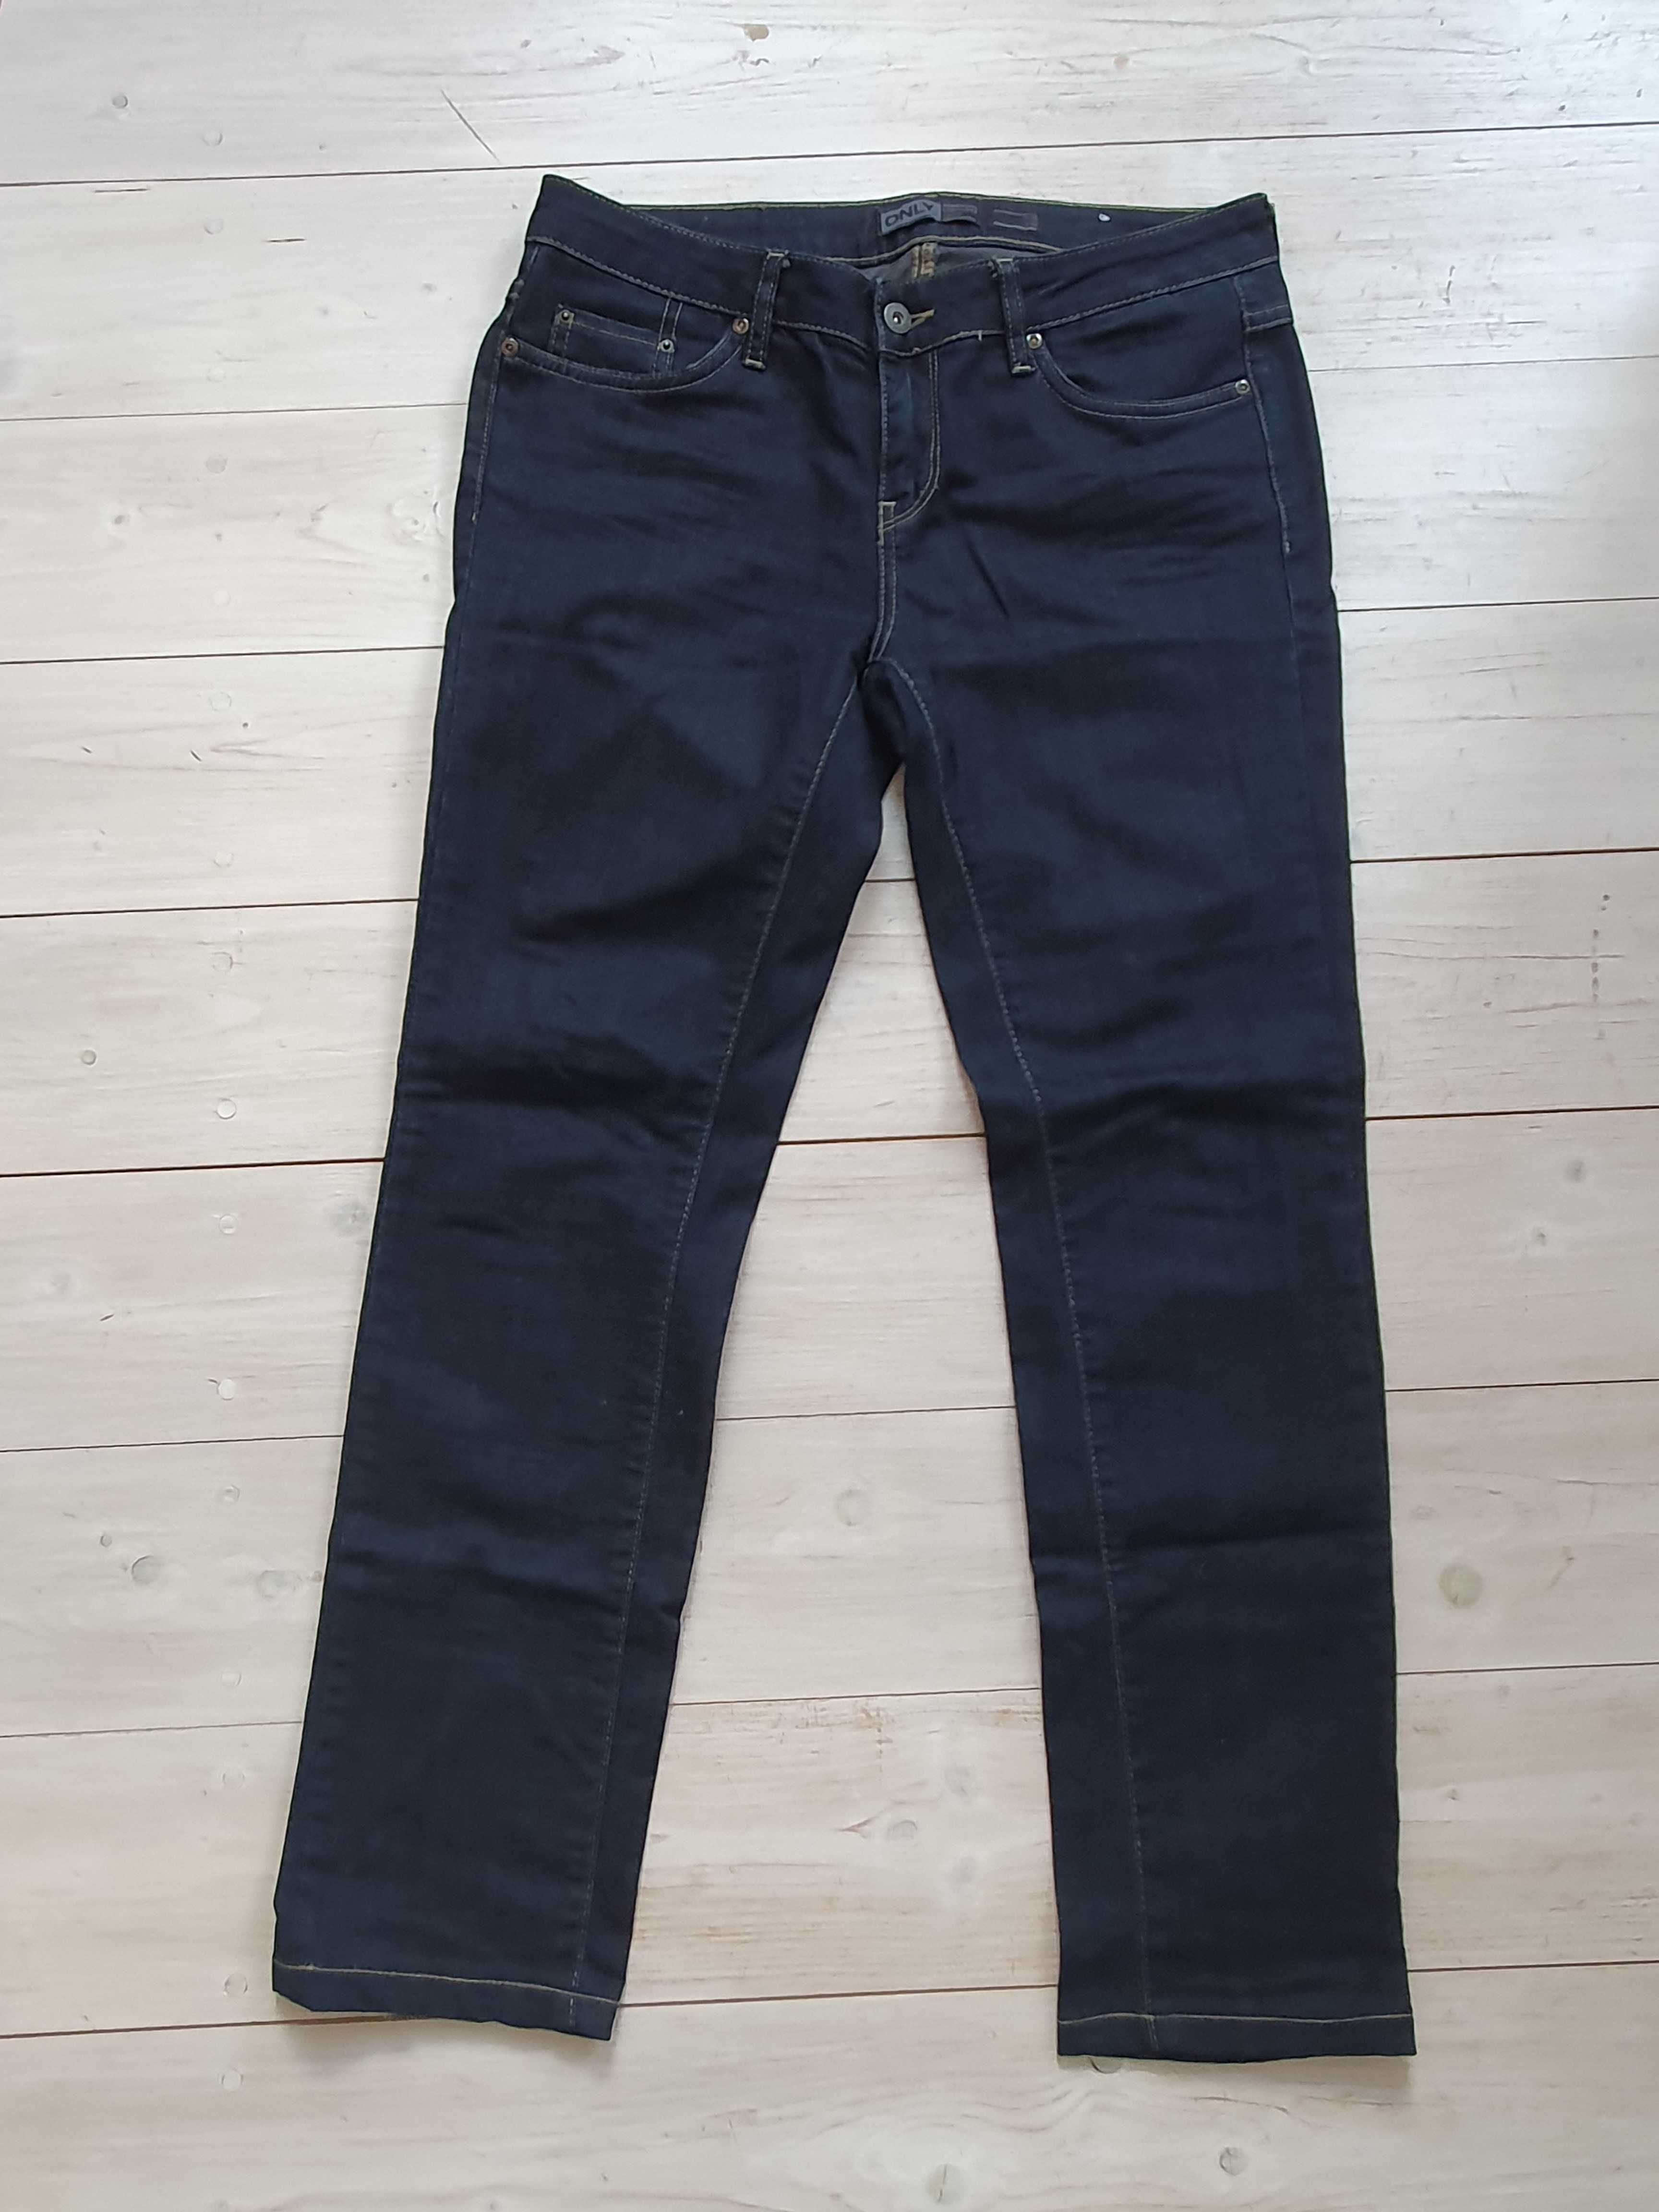 Spodnie dżinsy jeansy Only Vero Moda rozmiar 30  38 40 L